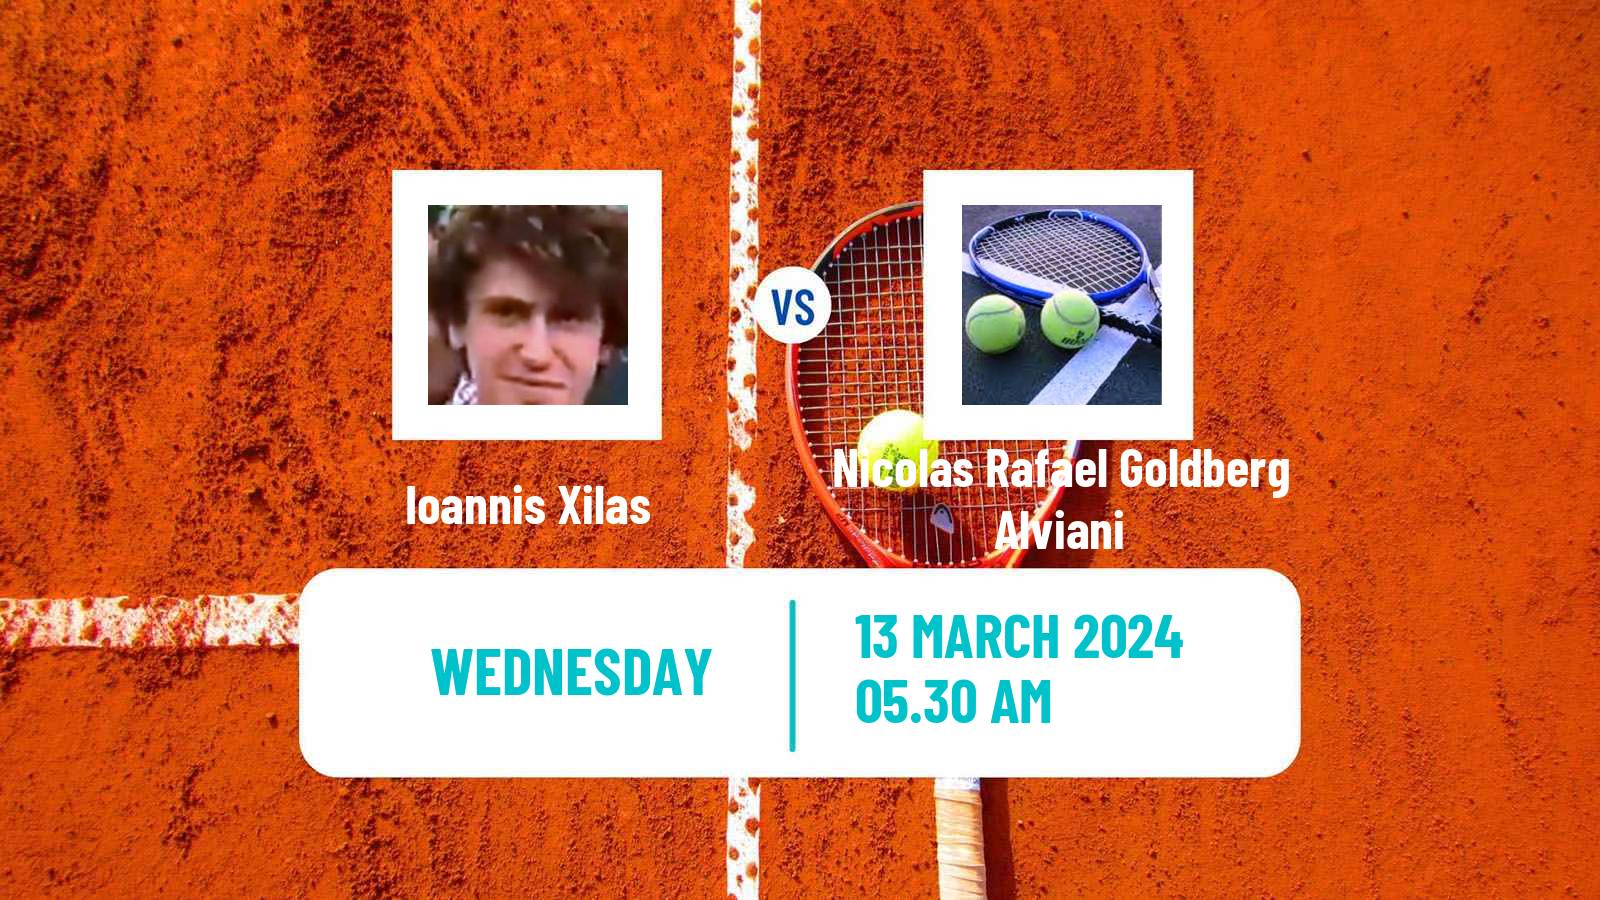 Tennis ITF M15 Heraklion 2 Men Ioannis Xilas - Nicolas Rafael Goldberg Alviani